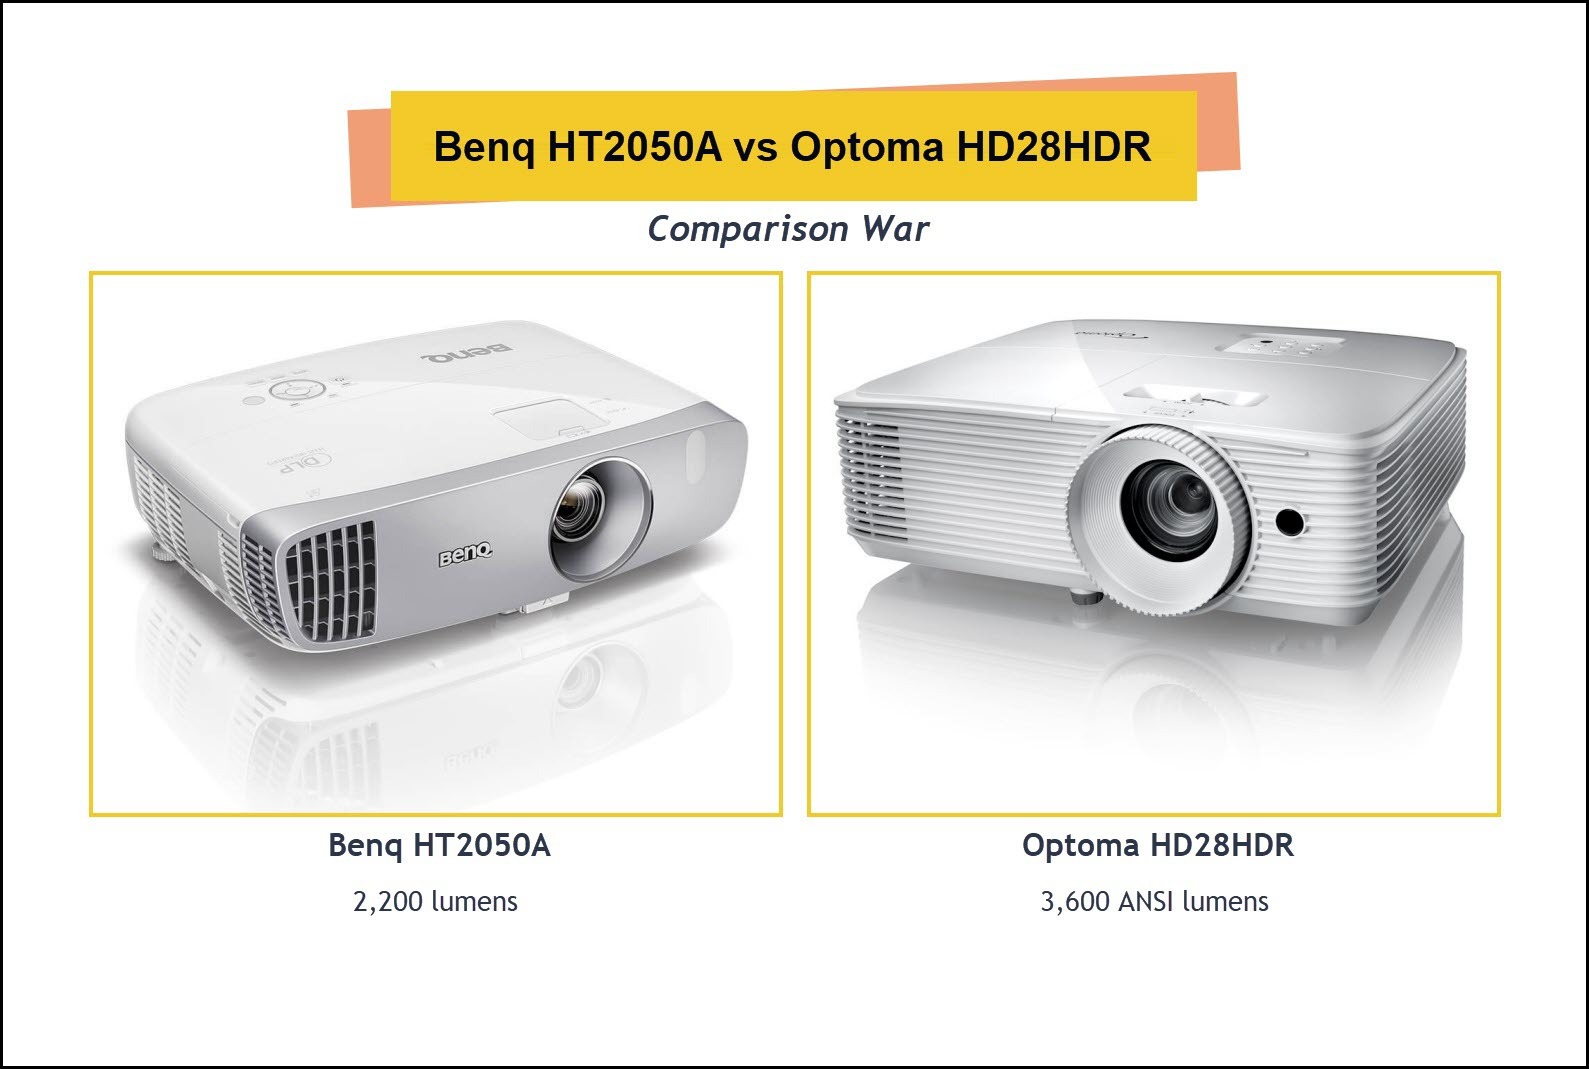 Optoma HD28HDR vs. Benq HT2050A Comparison